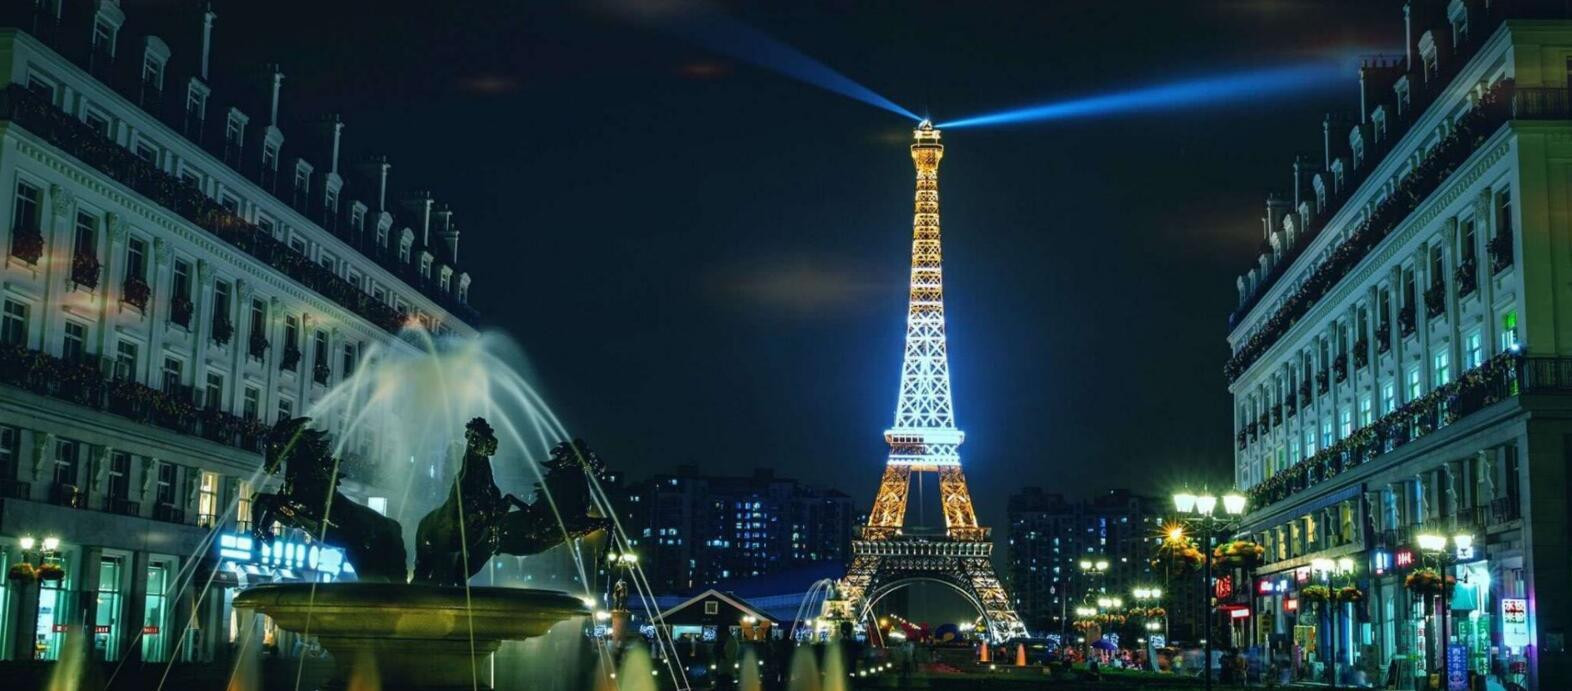 Tốn 1 tỷ USD để xây dựng, quảng bá rầm rộ kỳ vọng trở thành điểm du lịch hot toàn châu Á: dự án “Paris phiên bản 2